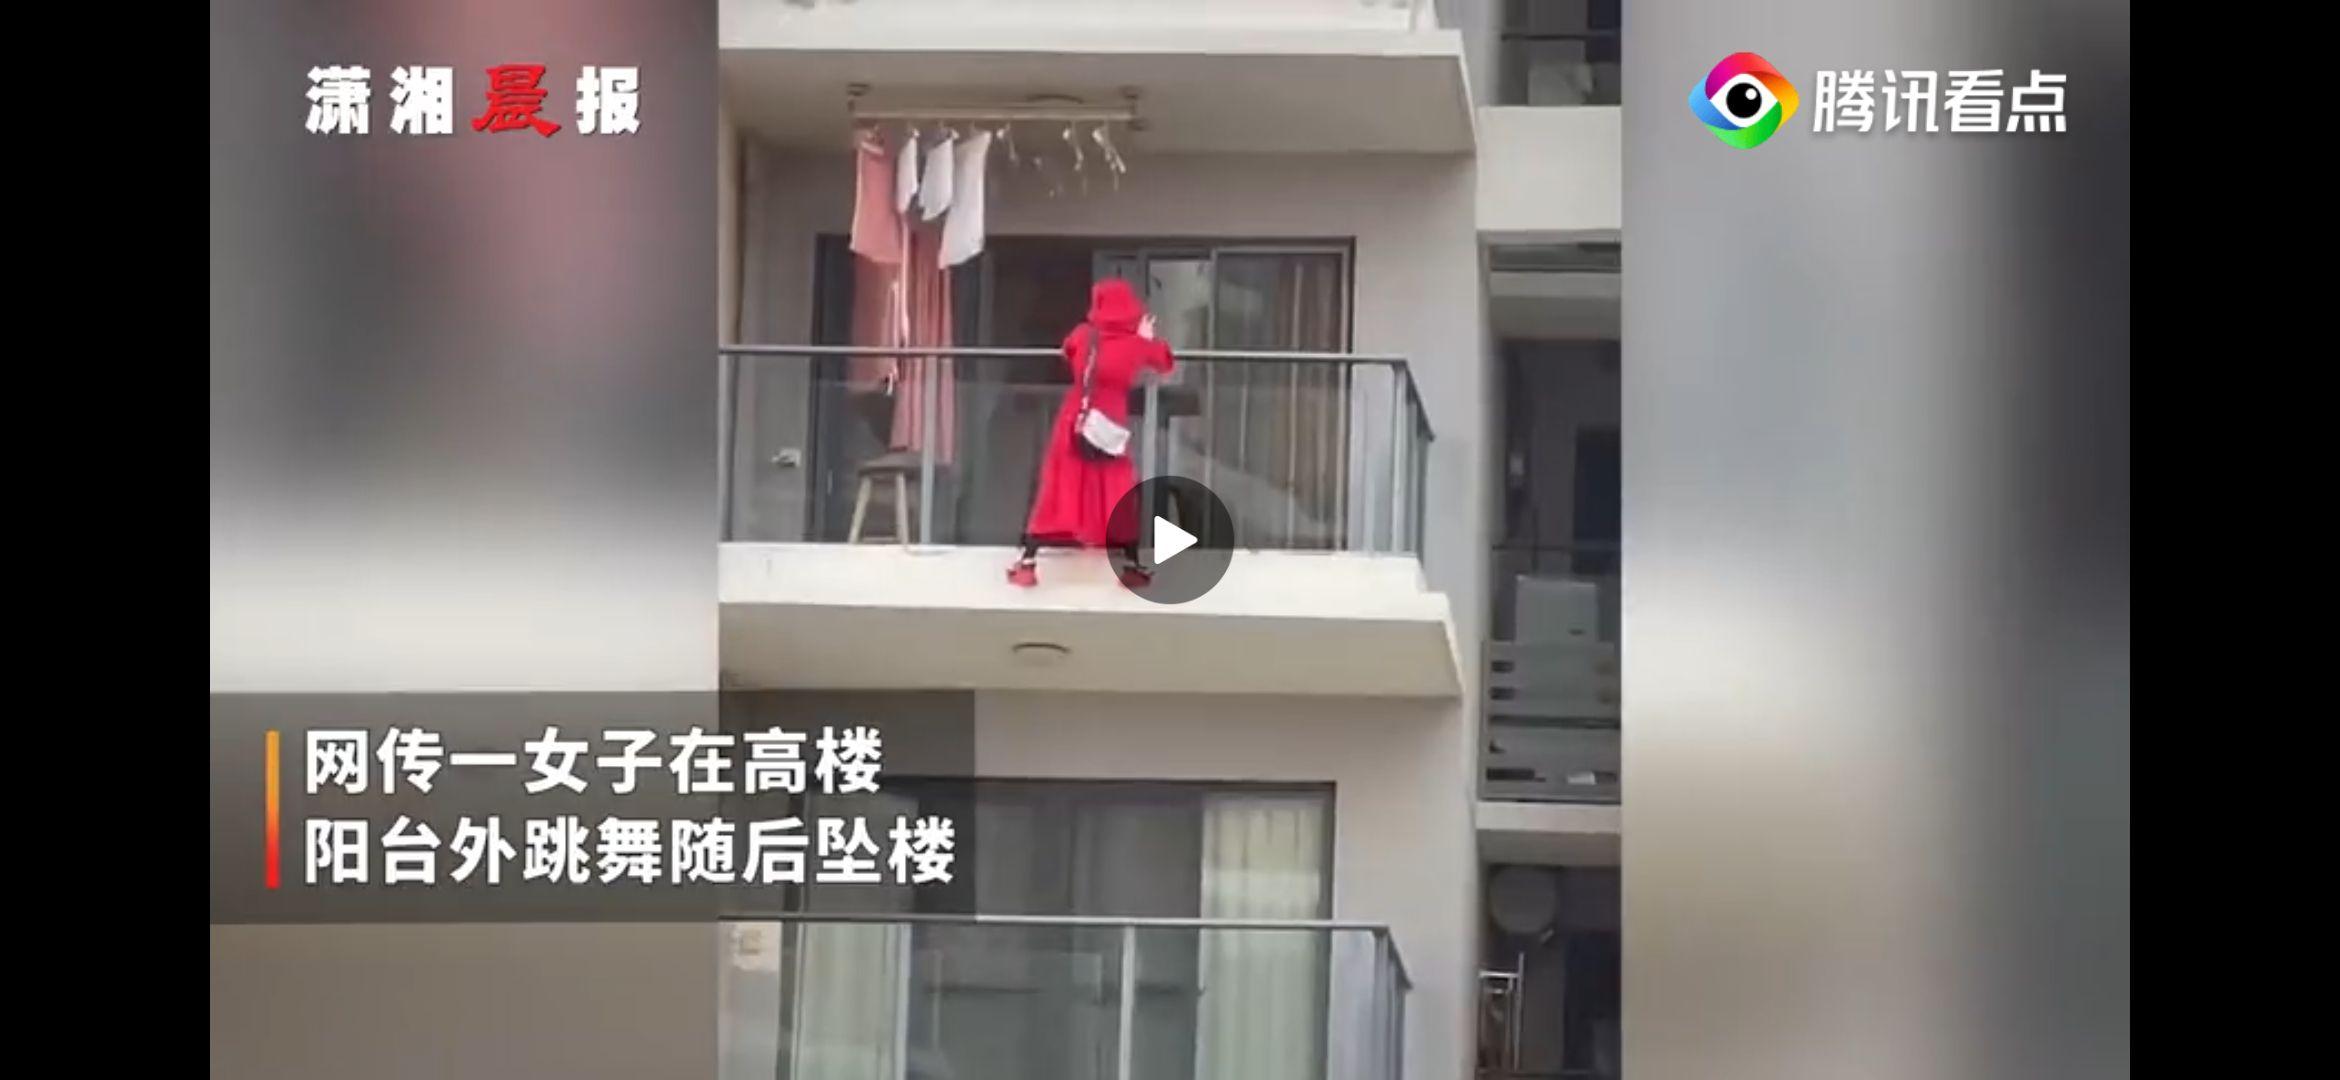 三亚一红衣女子疑似因拍视频从高楼坠落警方通报称房内留有遗书还有